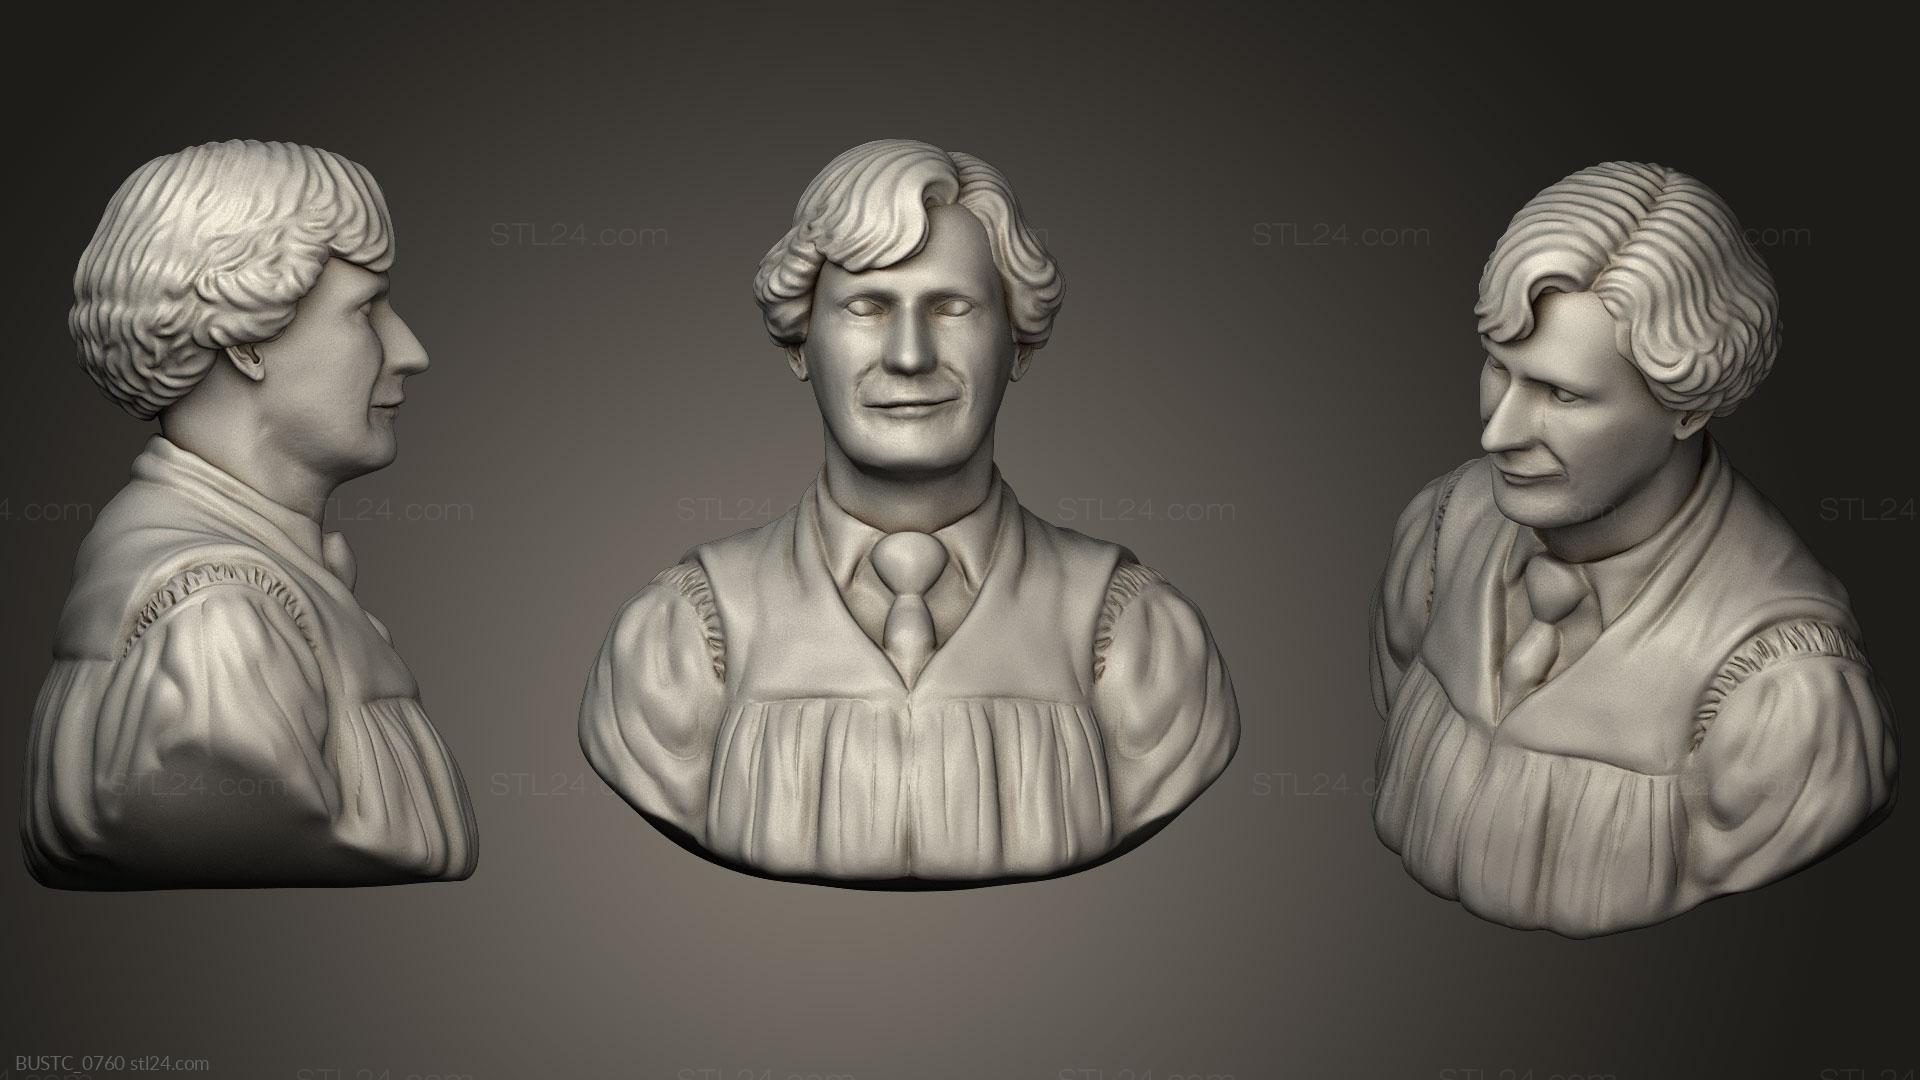 Бюсты и барельефы известных личностей (Бюст Артура Уизли, BUSTC_0760) 3D модель для ЧПУ станка